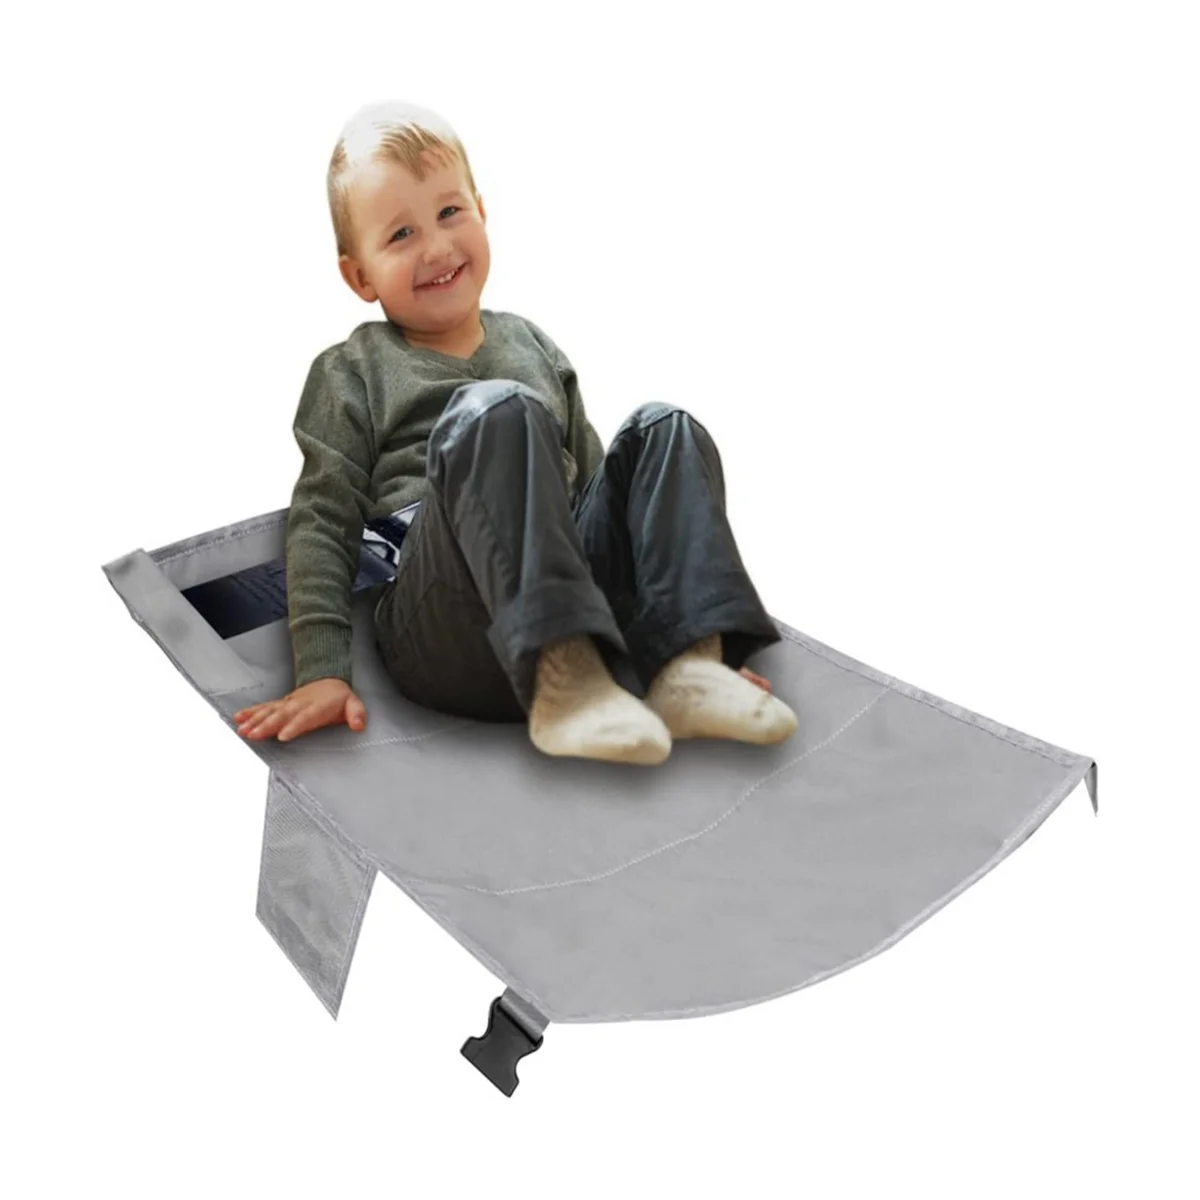 

Подставка для ног для детей, портативный гамак для путешествий, для малышей, для самолета, удлинитель для ног, черный цвет